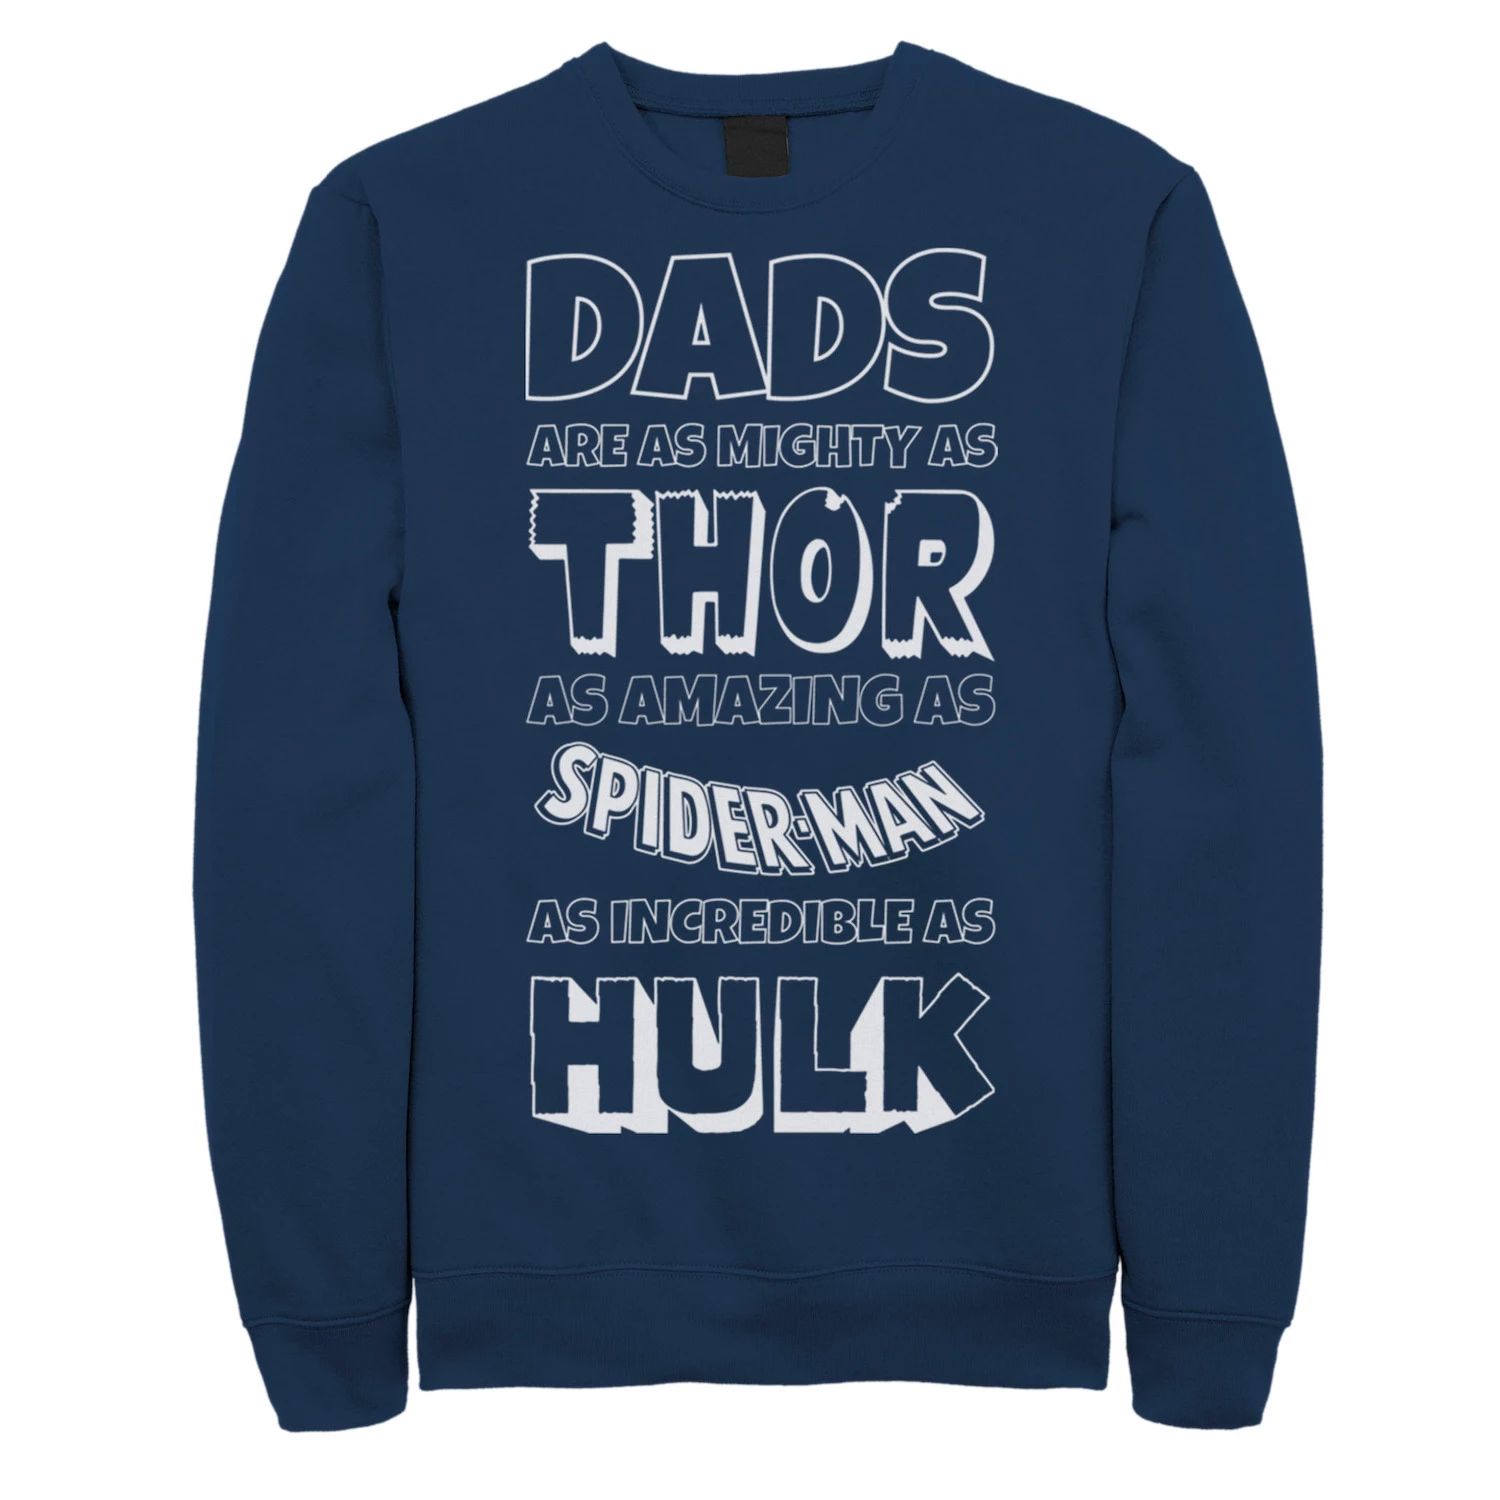 Мужская флисовая одежда с атрибутами «мстители» и «День отца» для папы Marvel, синий